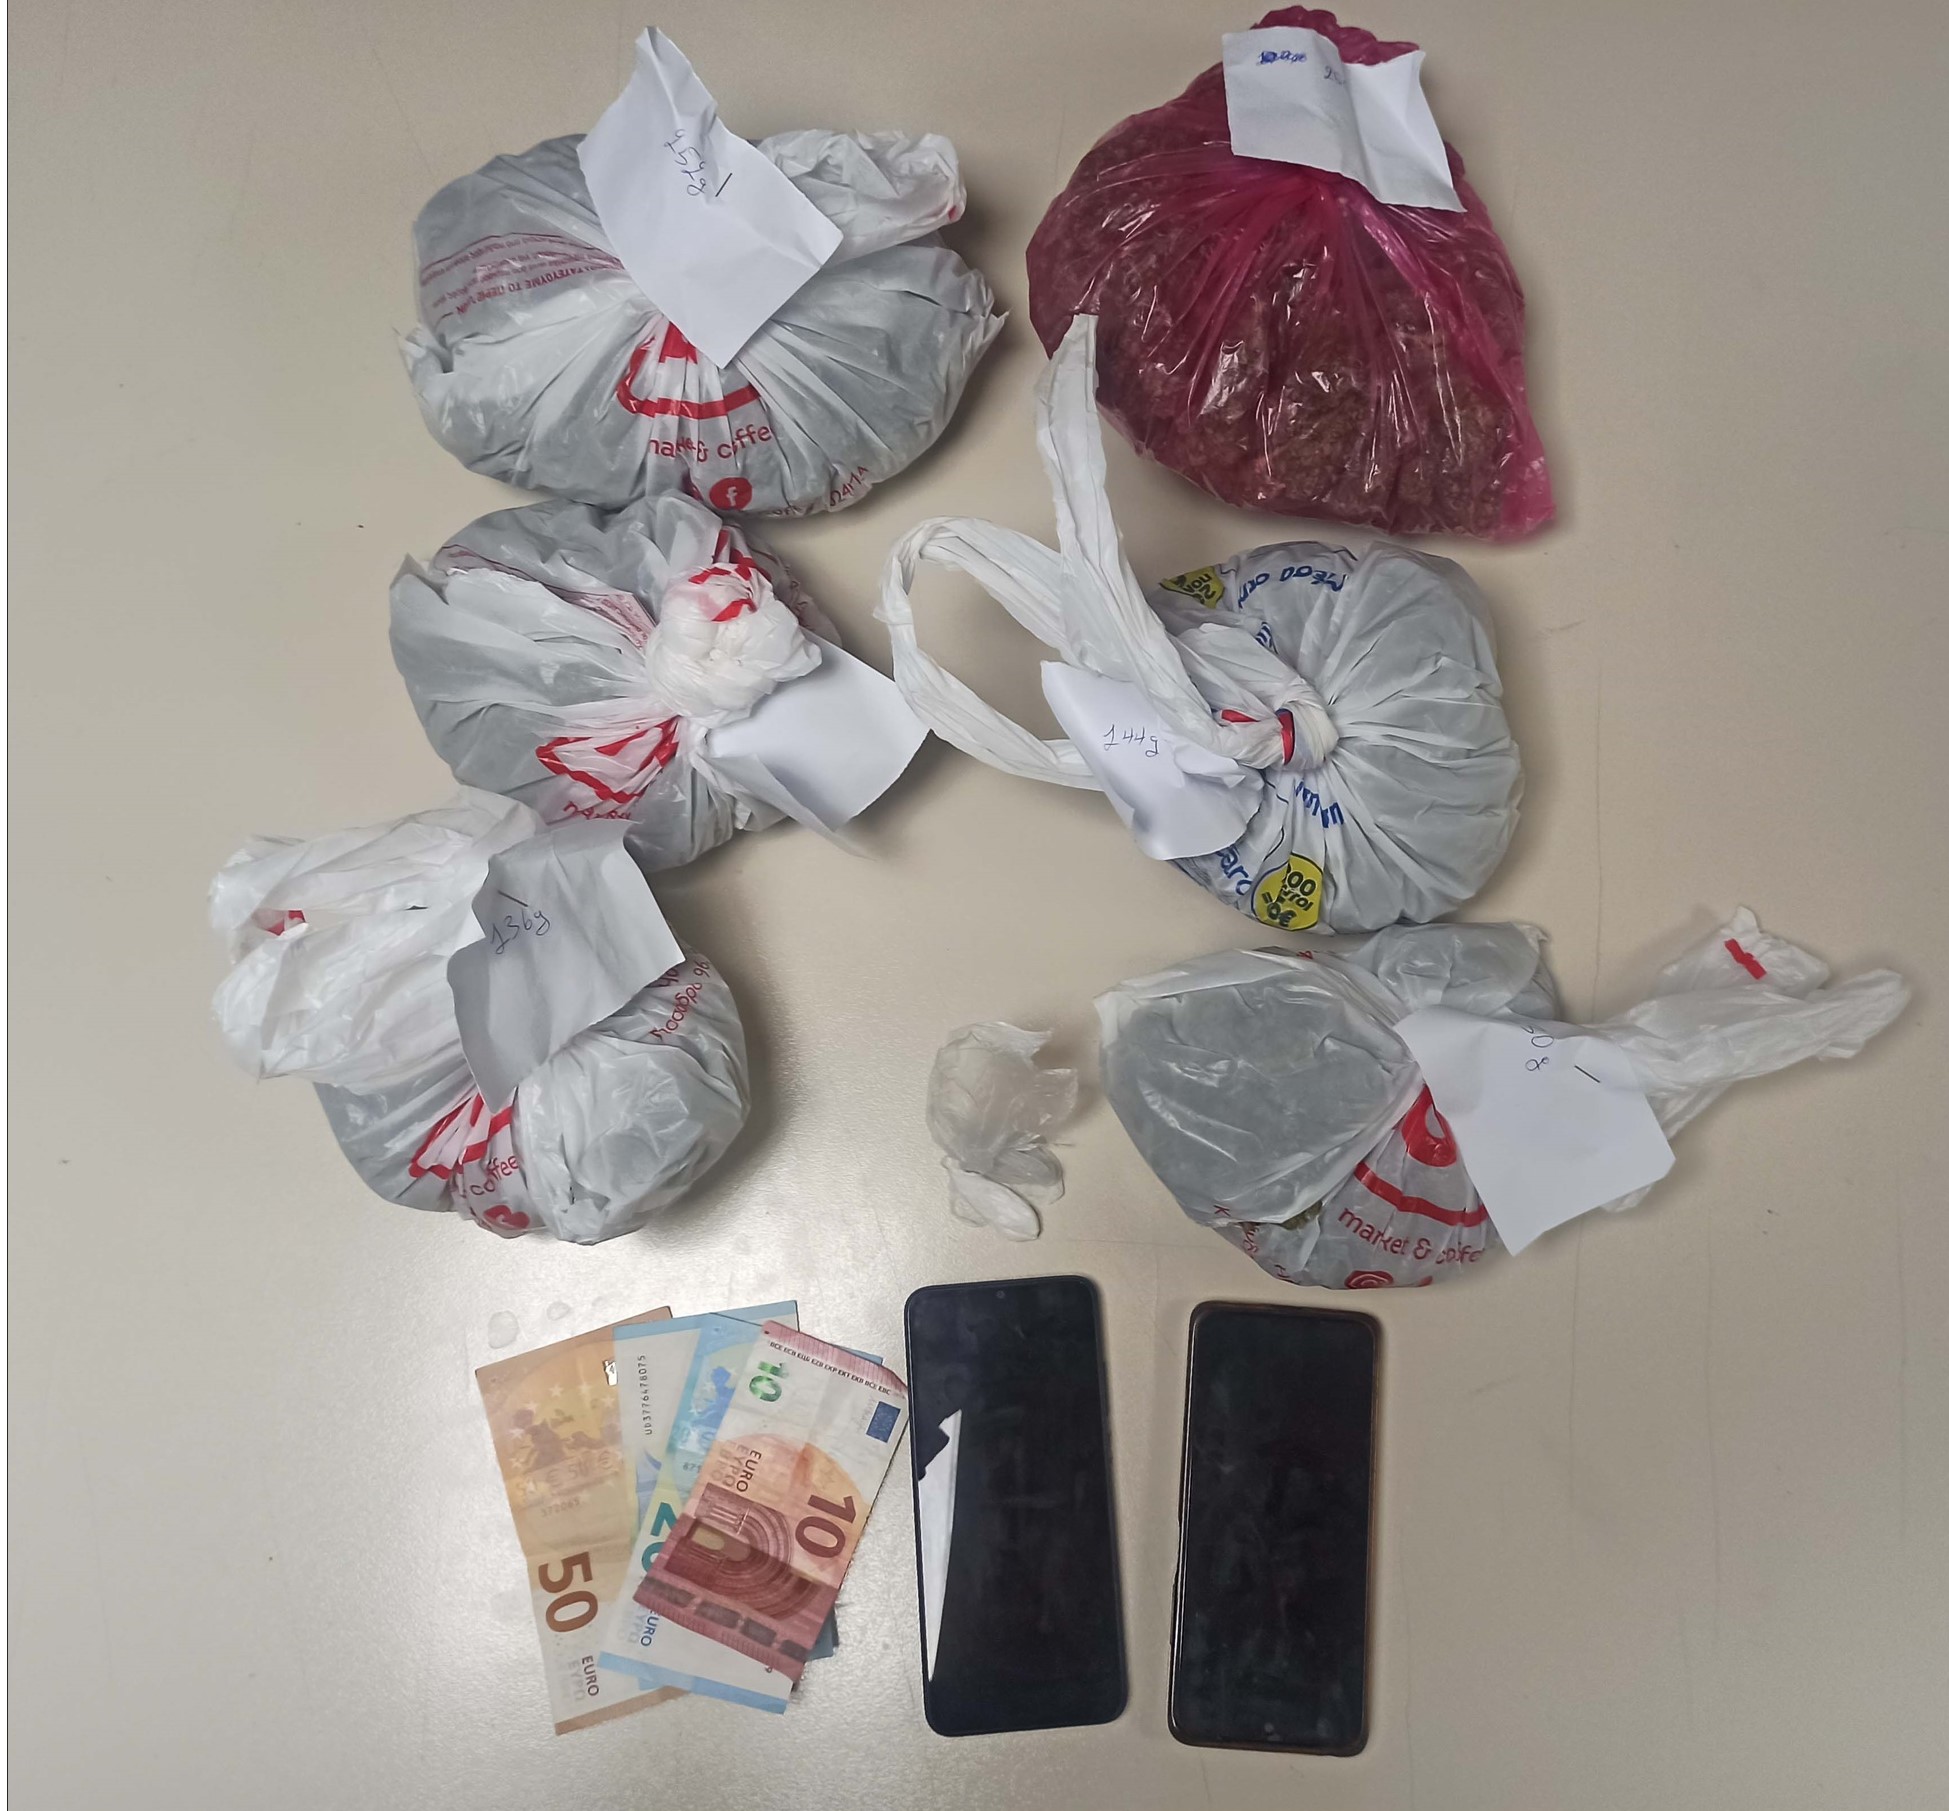 Θεσσαλονίκη: Συνελήφθησαν νεαροί στον Εύοσμο για ένα κιλό κάνναβη και ποσότητα κοκαΐνης